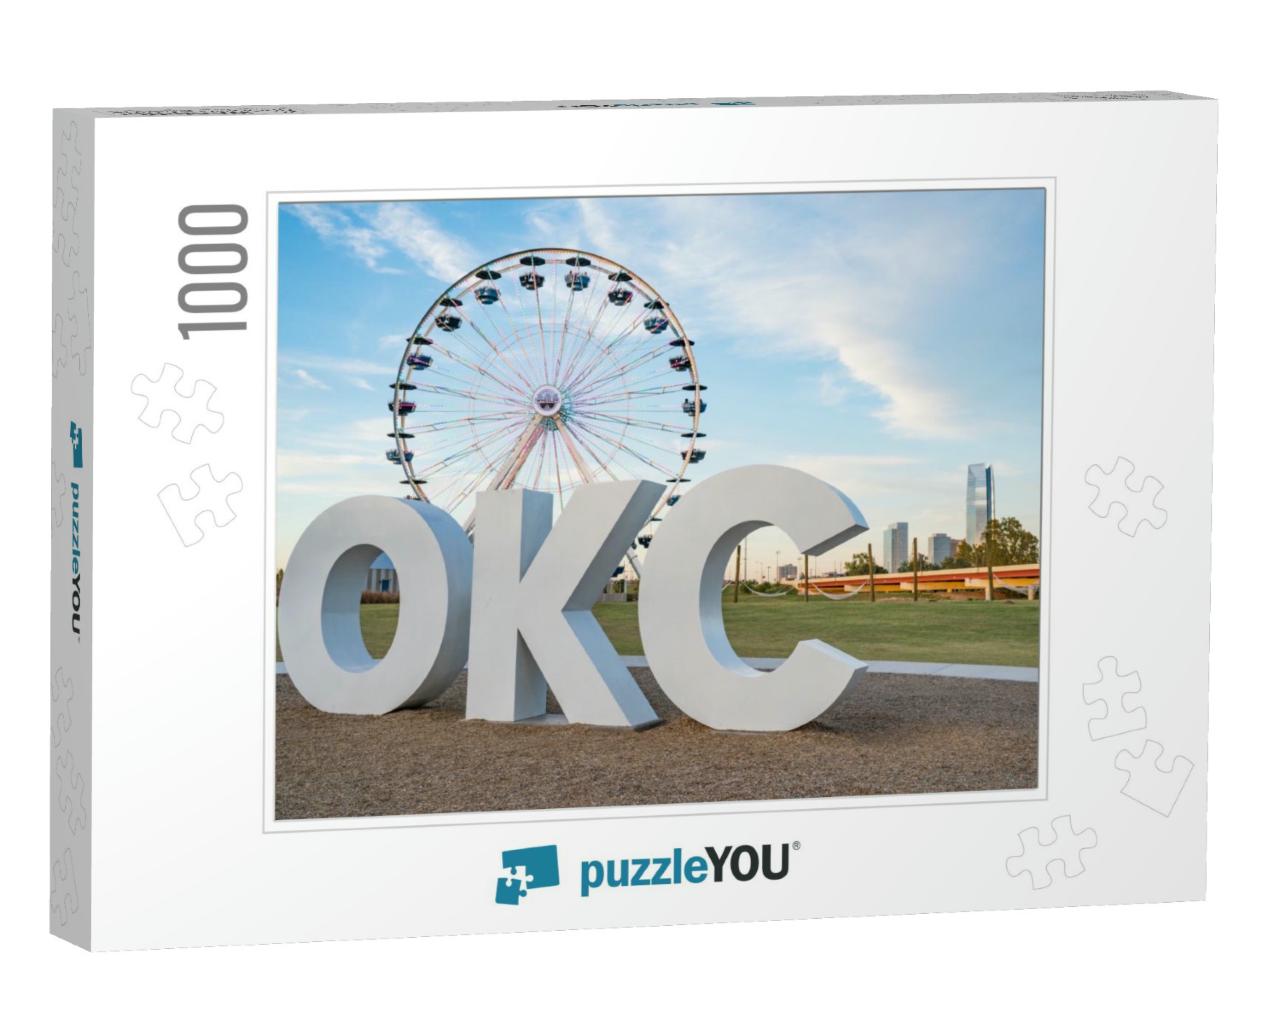 Skyline of Oklahoma City, Ok with Okc Sign & Ferris Wheel... Jigsaw Puzzle with 1000 pieces